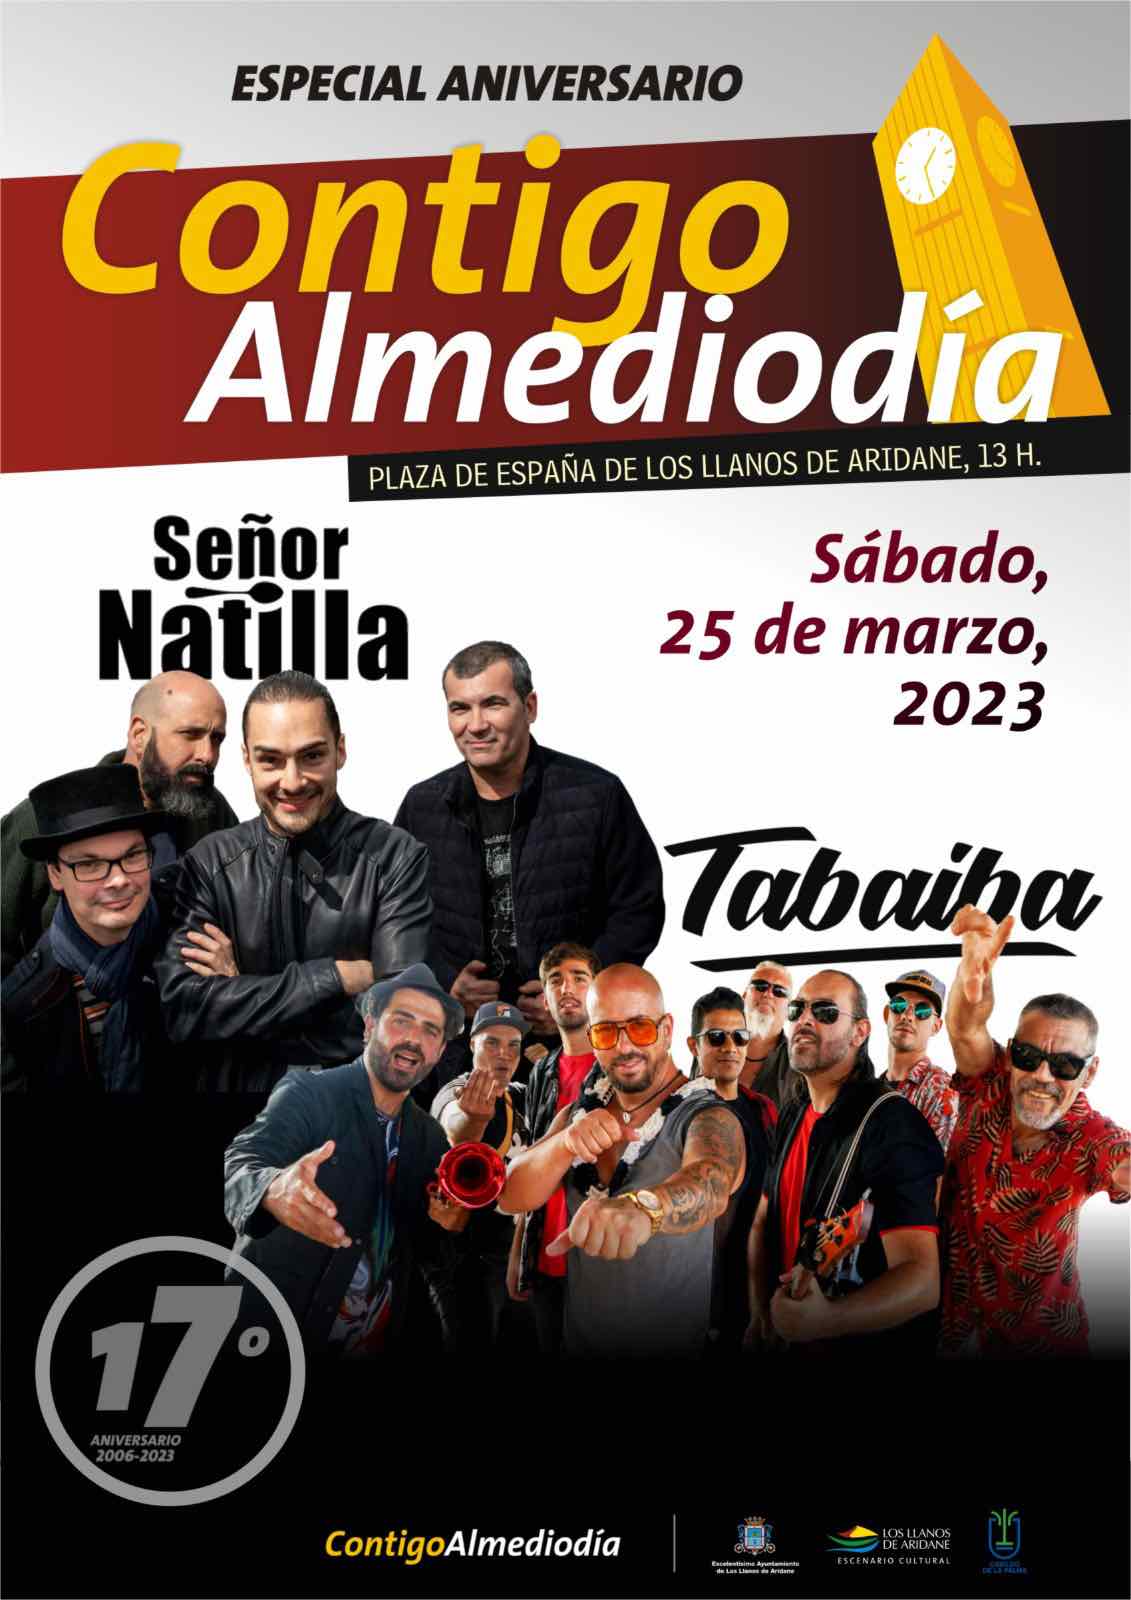 Tabaiba Band y Señor Natillas protagonistas del XVII aniversario de Contigo Almediodía en Los Llanos de Aridane